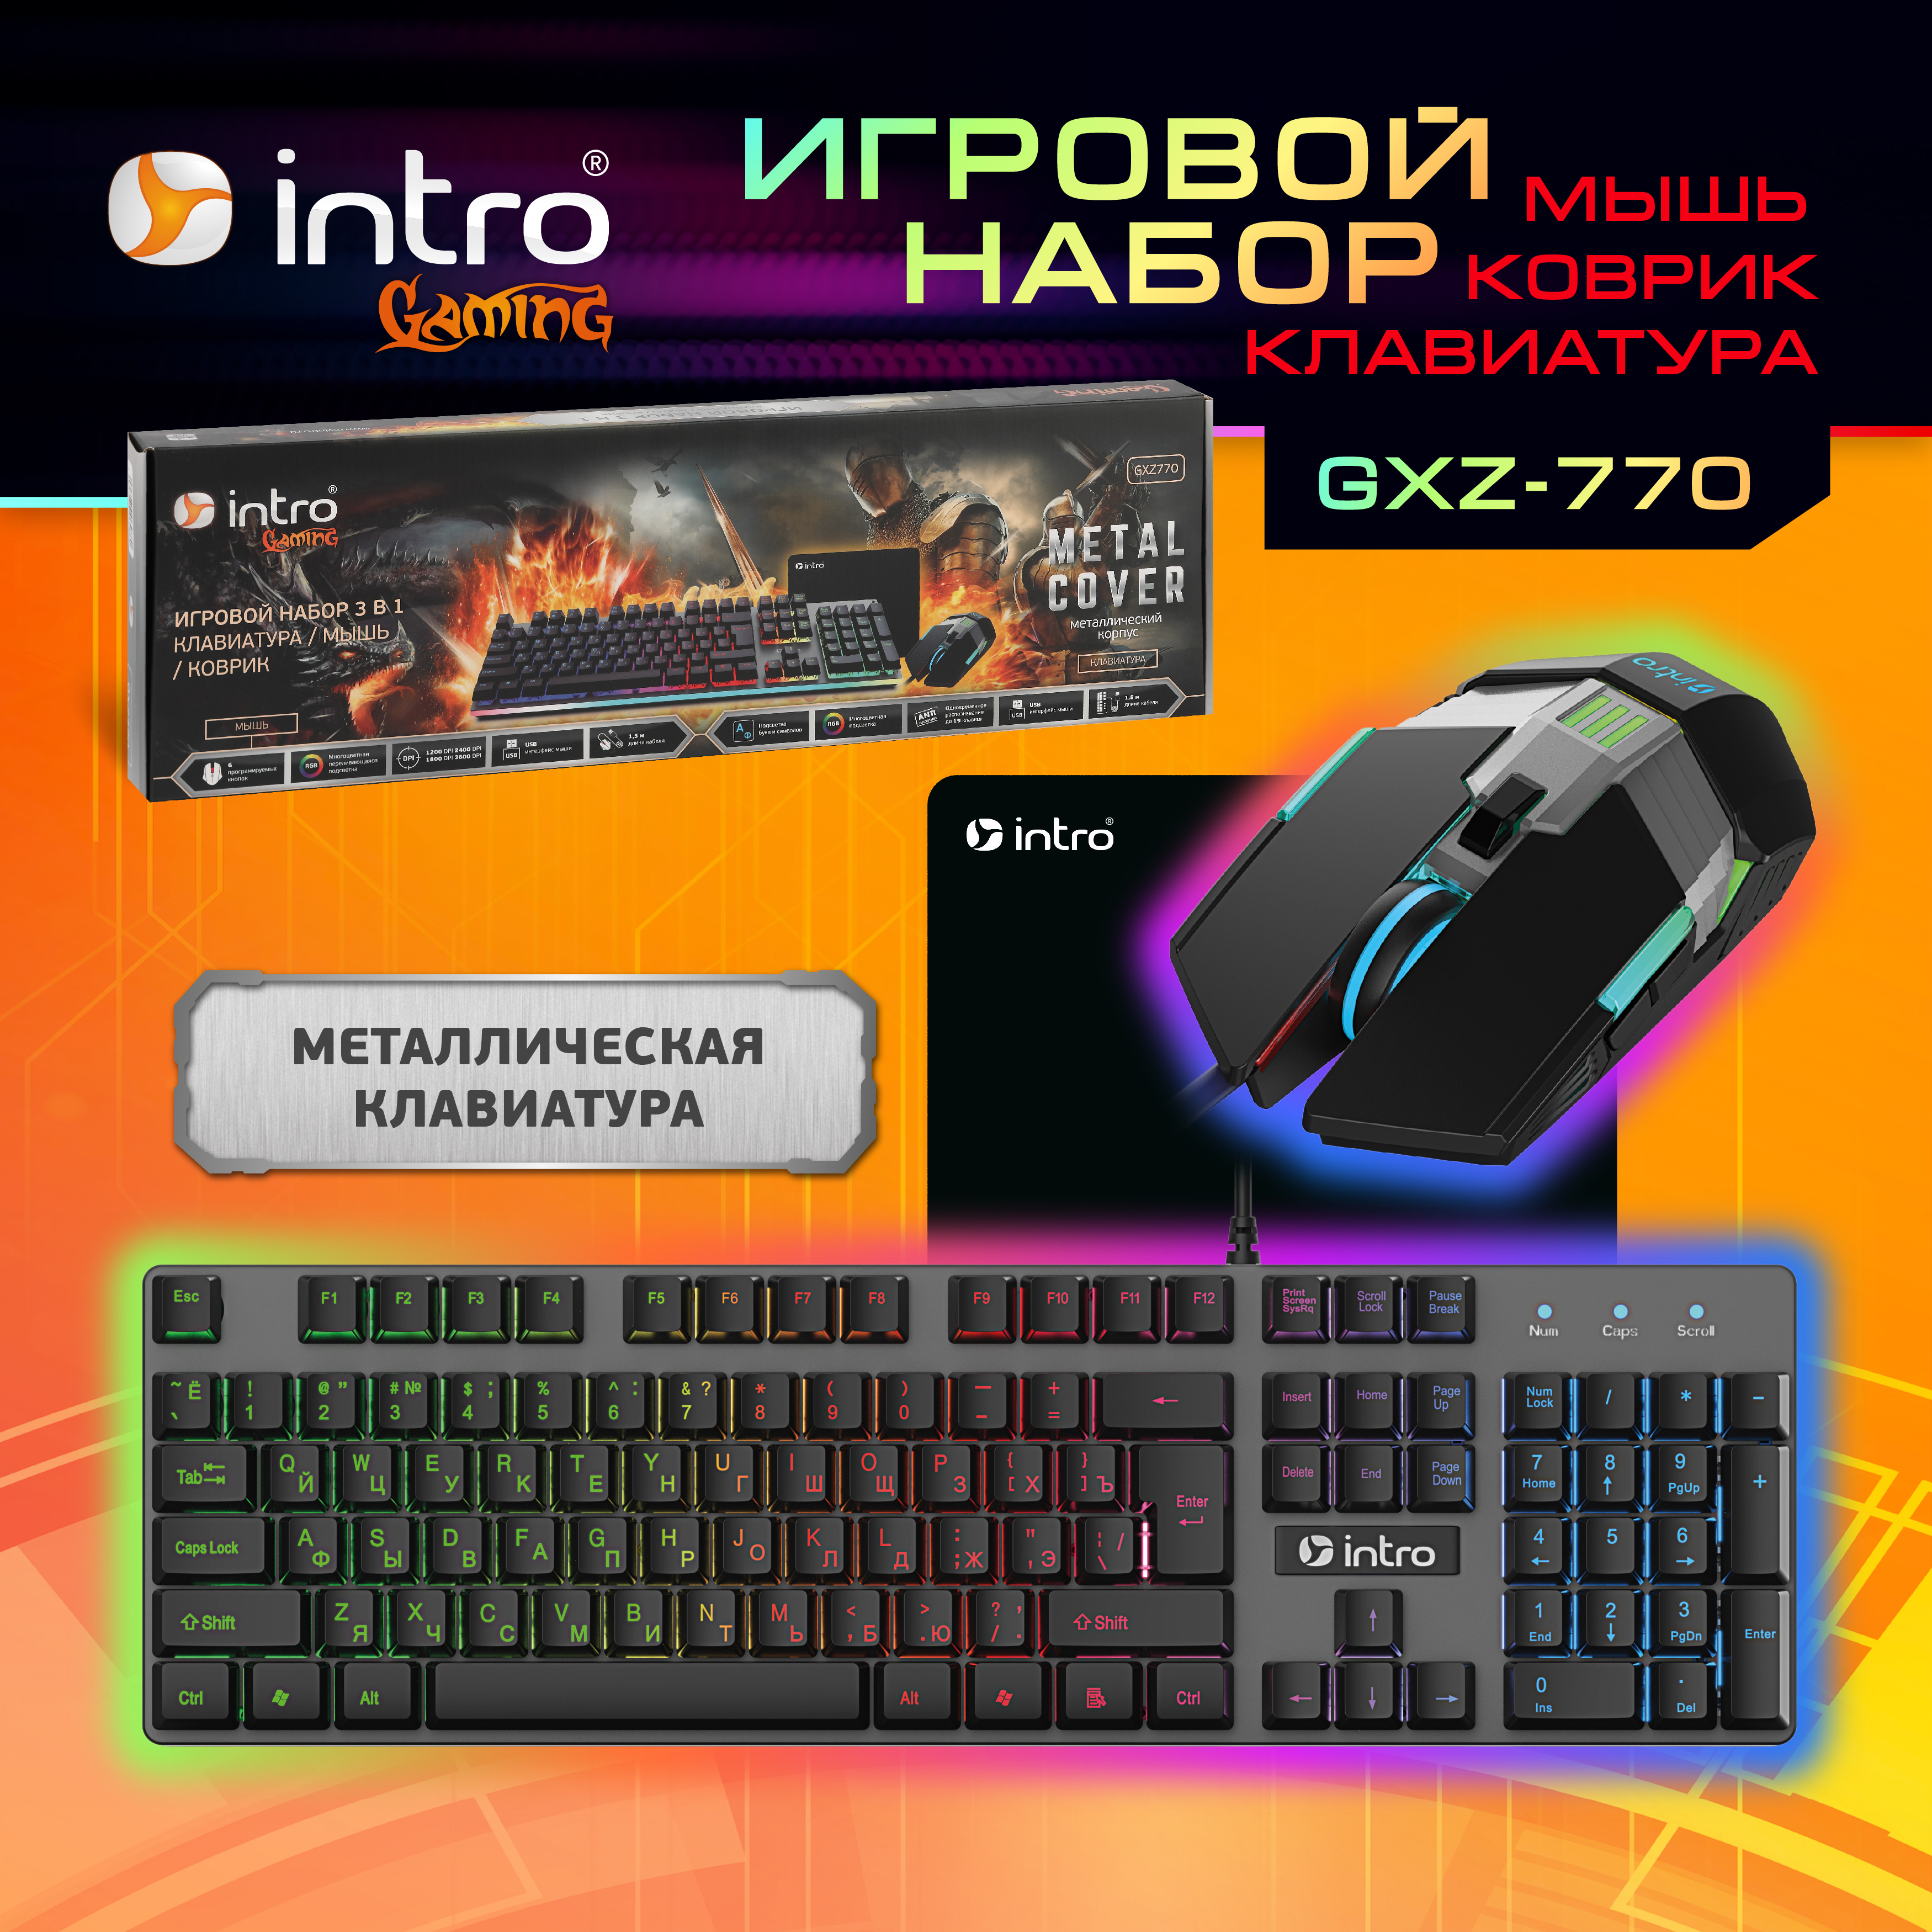 Клавиатура и мышь комплект Intro GXZ770 проводной игровой 1200-3600dpi + коврик